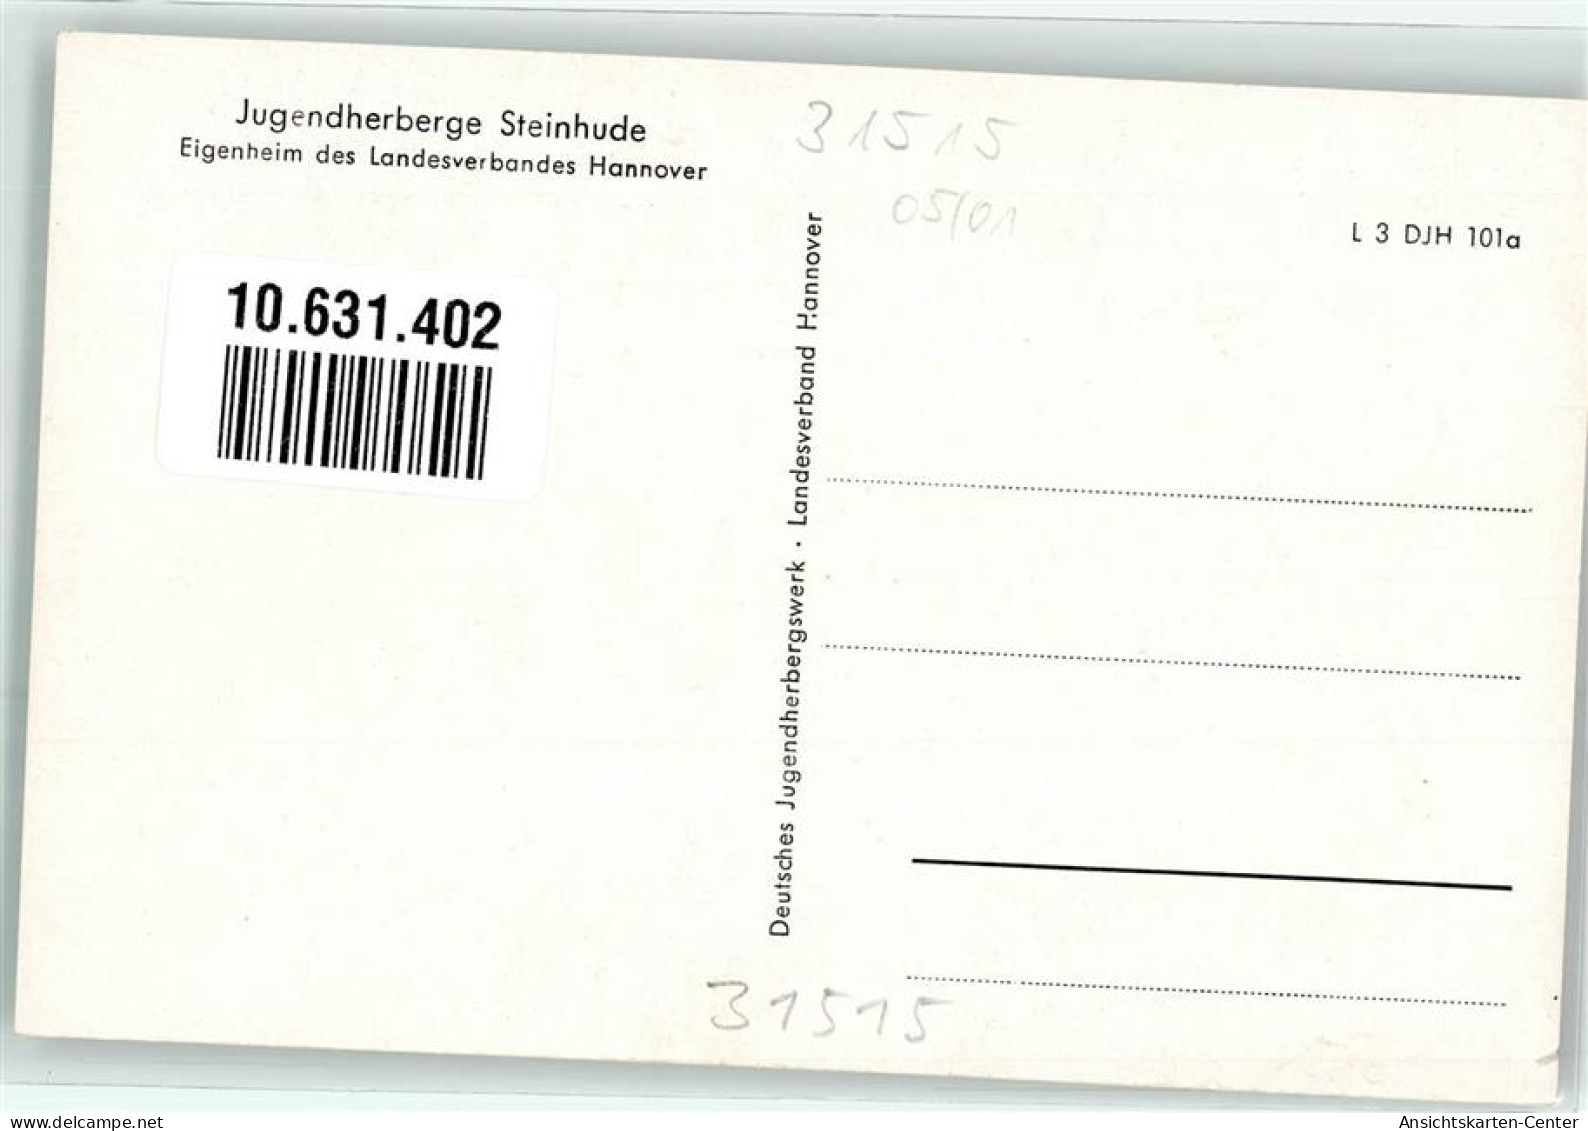 10631402 - Steinhude - Steinhude